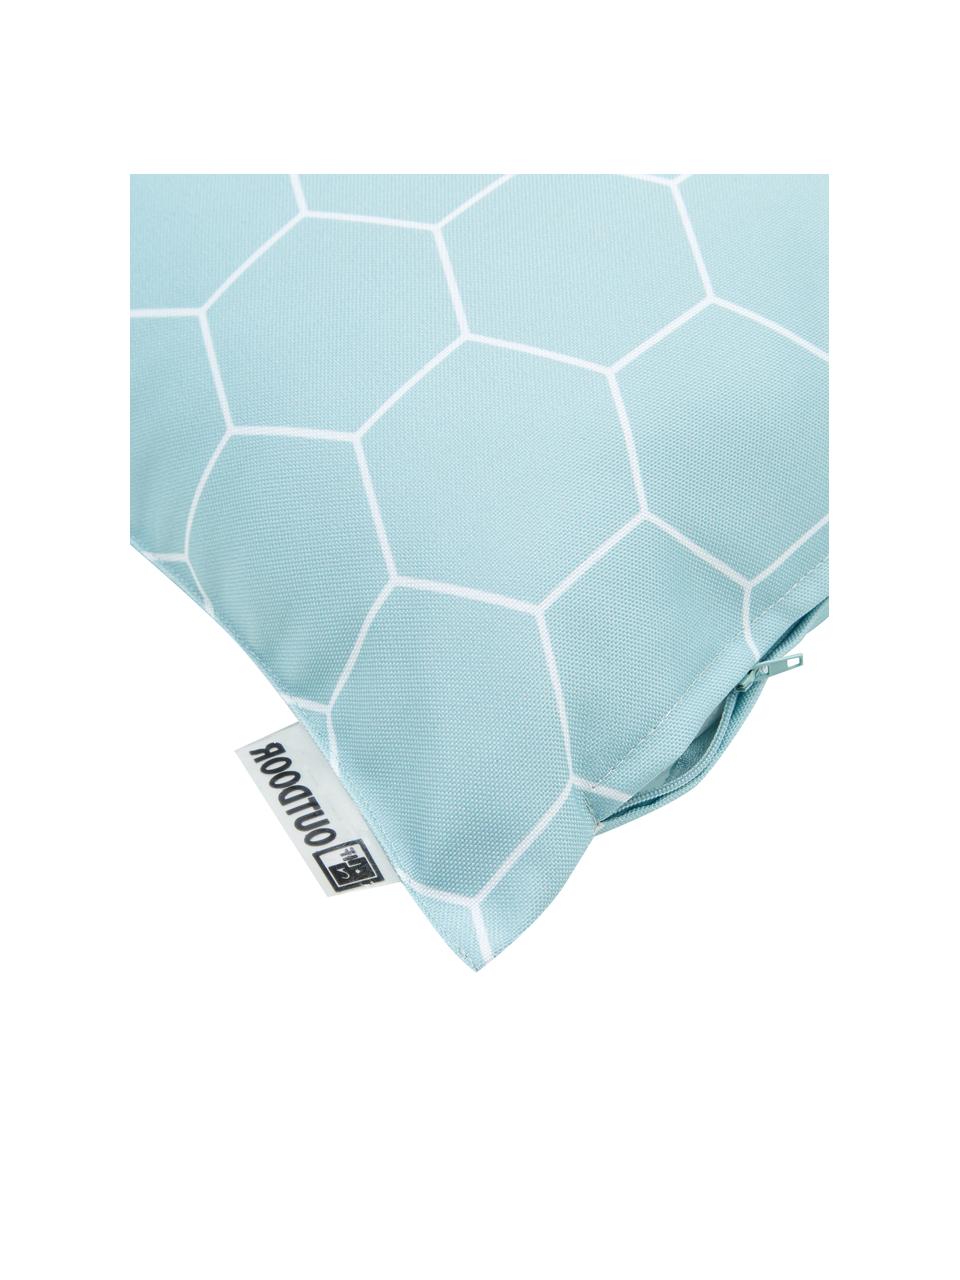 Poduszka zewnętrzna Honeycomb, 100% poliester, Niebieski, biały, S 47 x D 47 cm